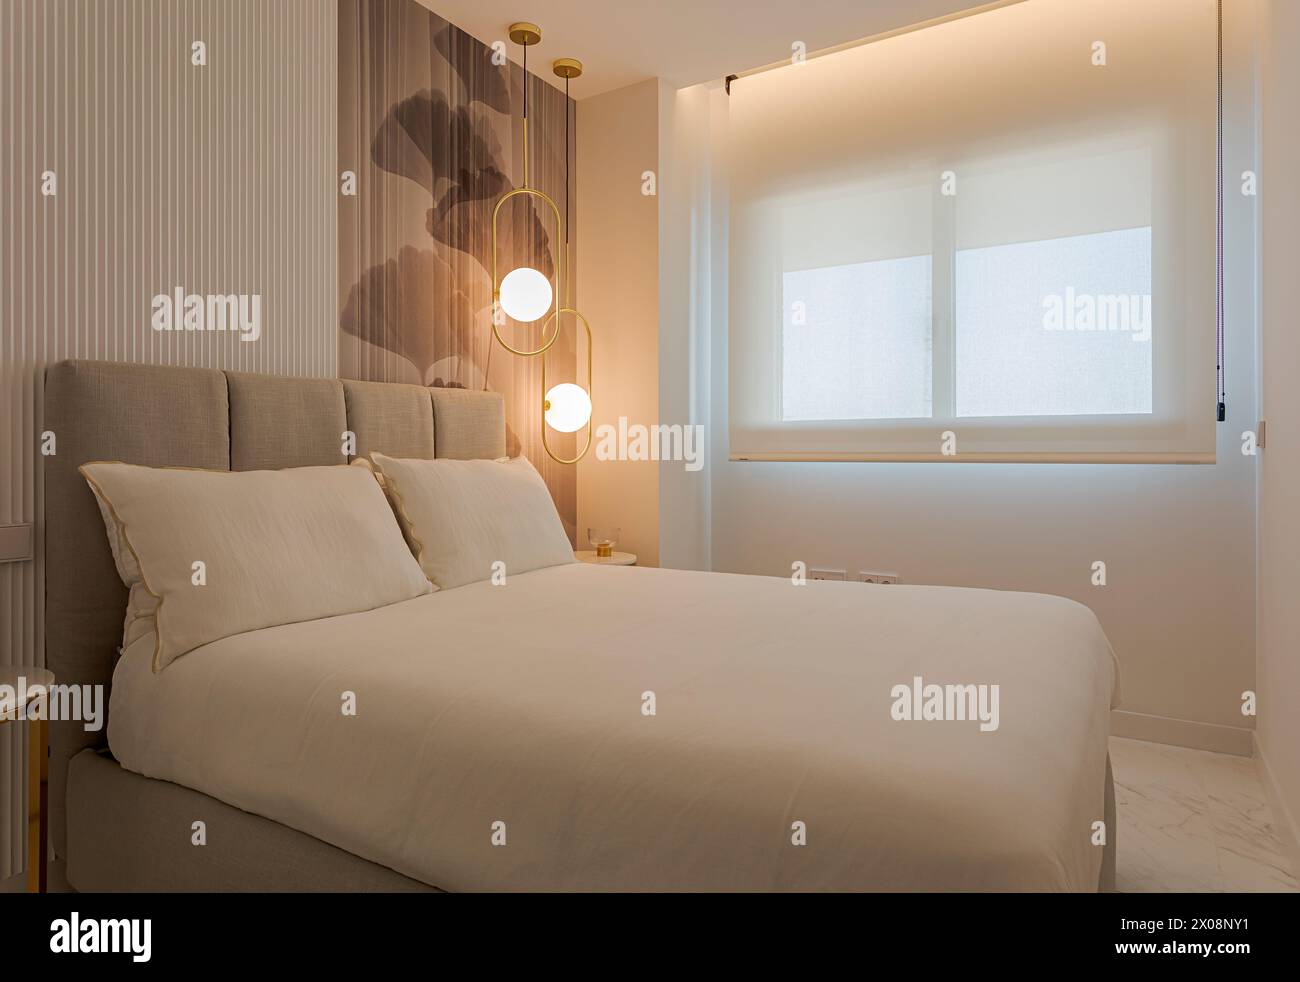 Camera dal design moderno con illuminazione elegante, comodo letto beige, carta da parati artistica e grande finestra con luce naturale Foto Stock